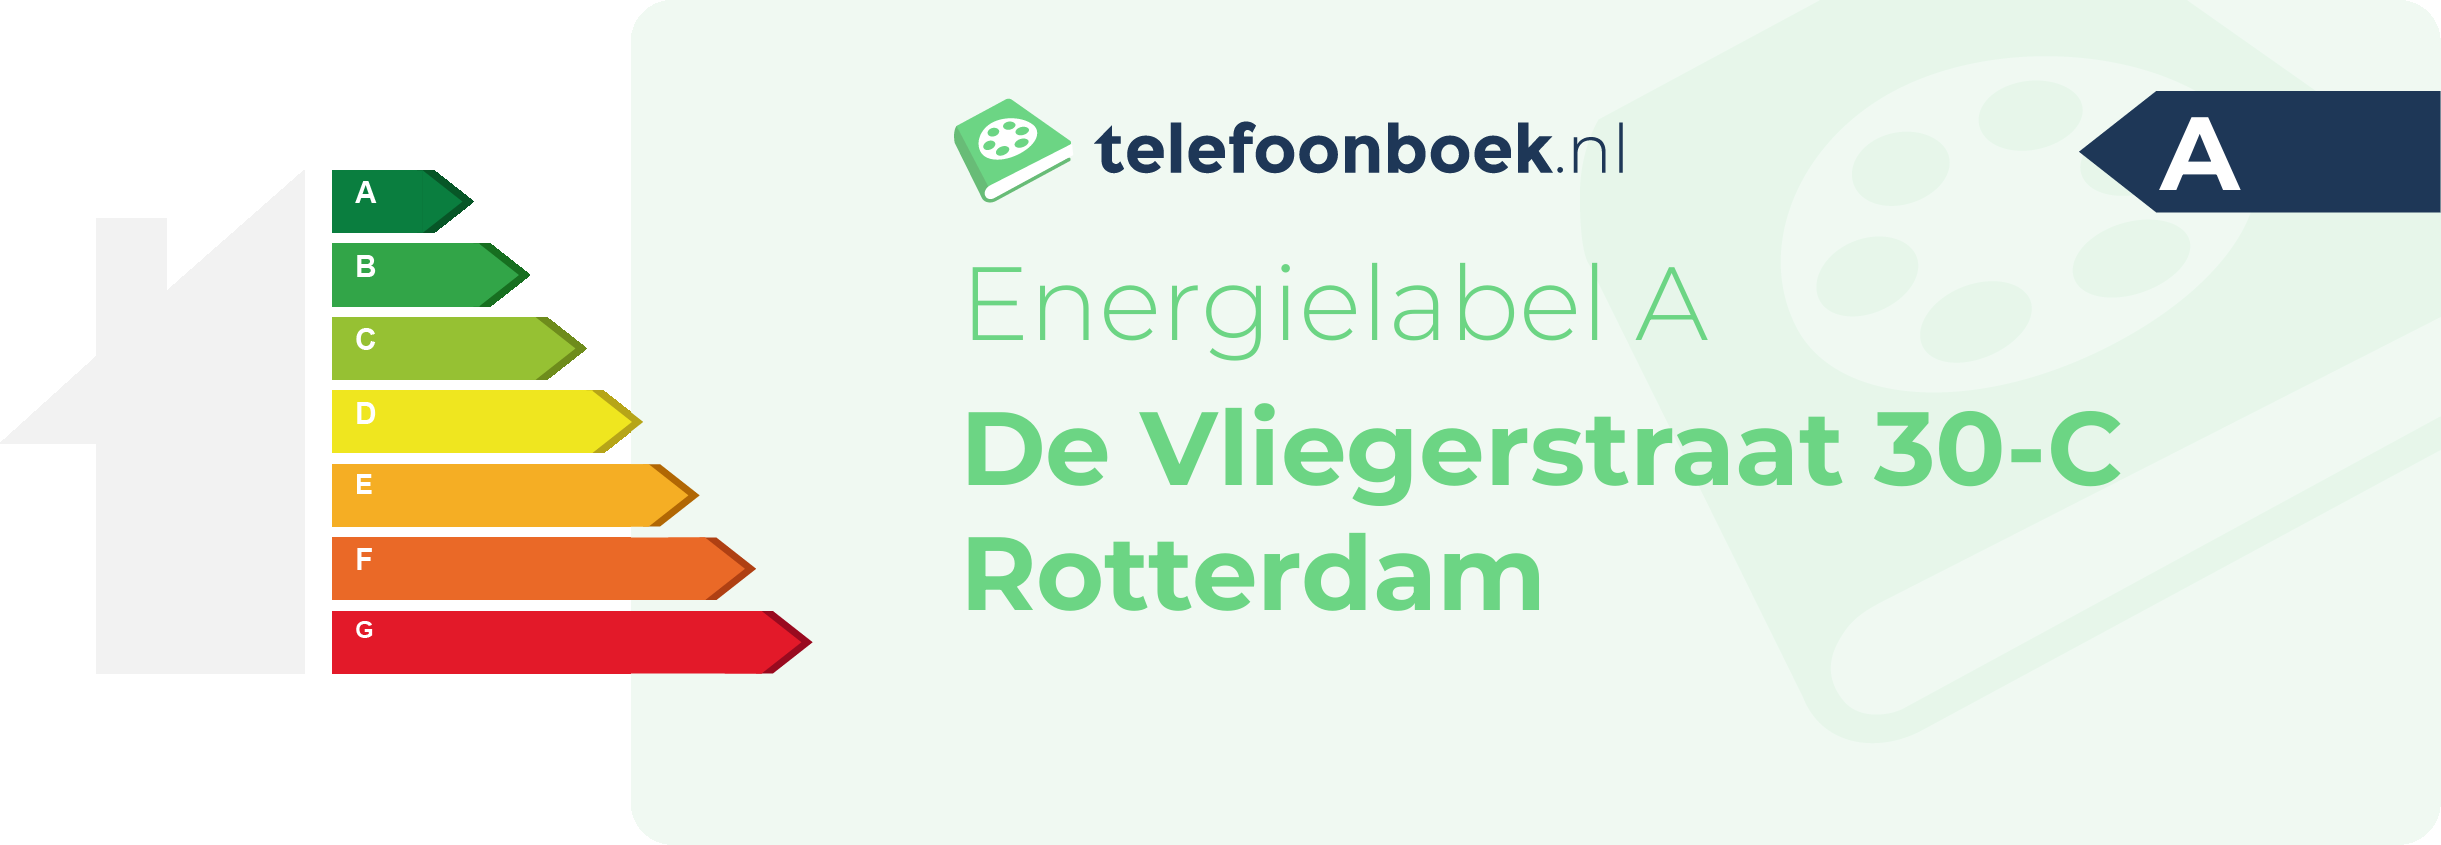 Energielabel De Vliegerstraat 30-C Rotterdam